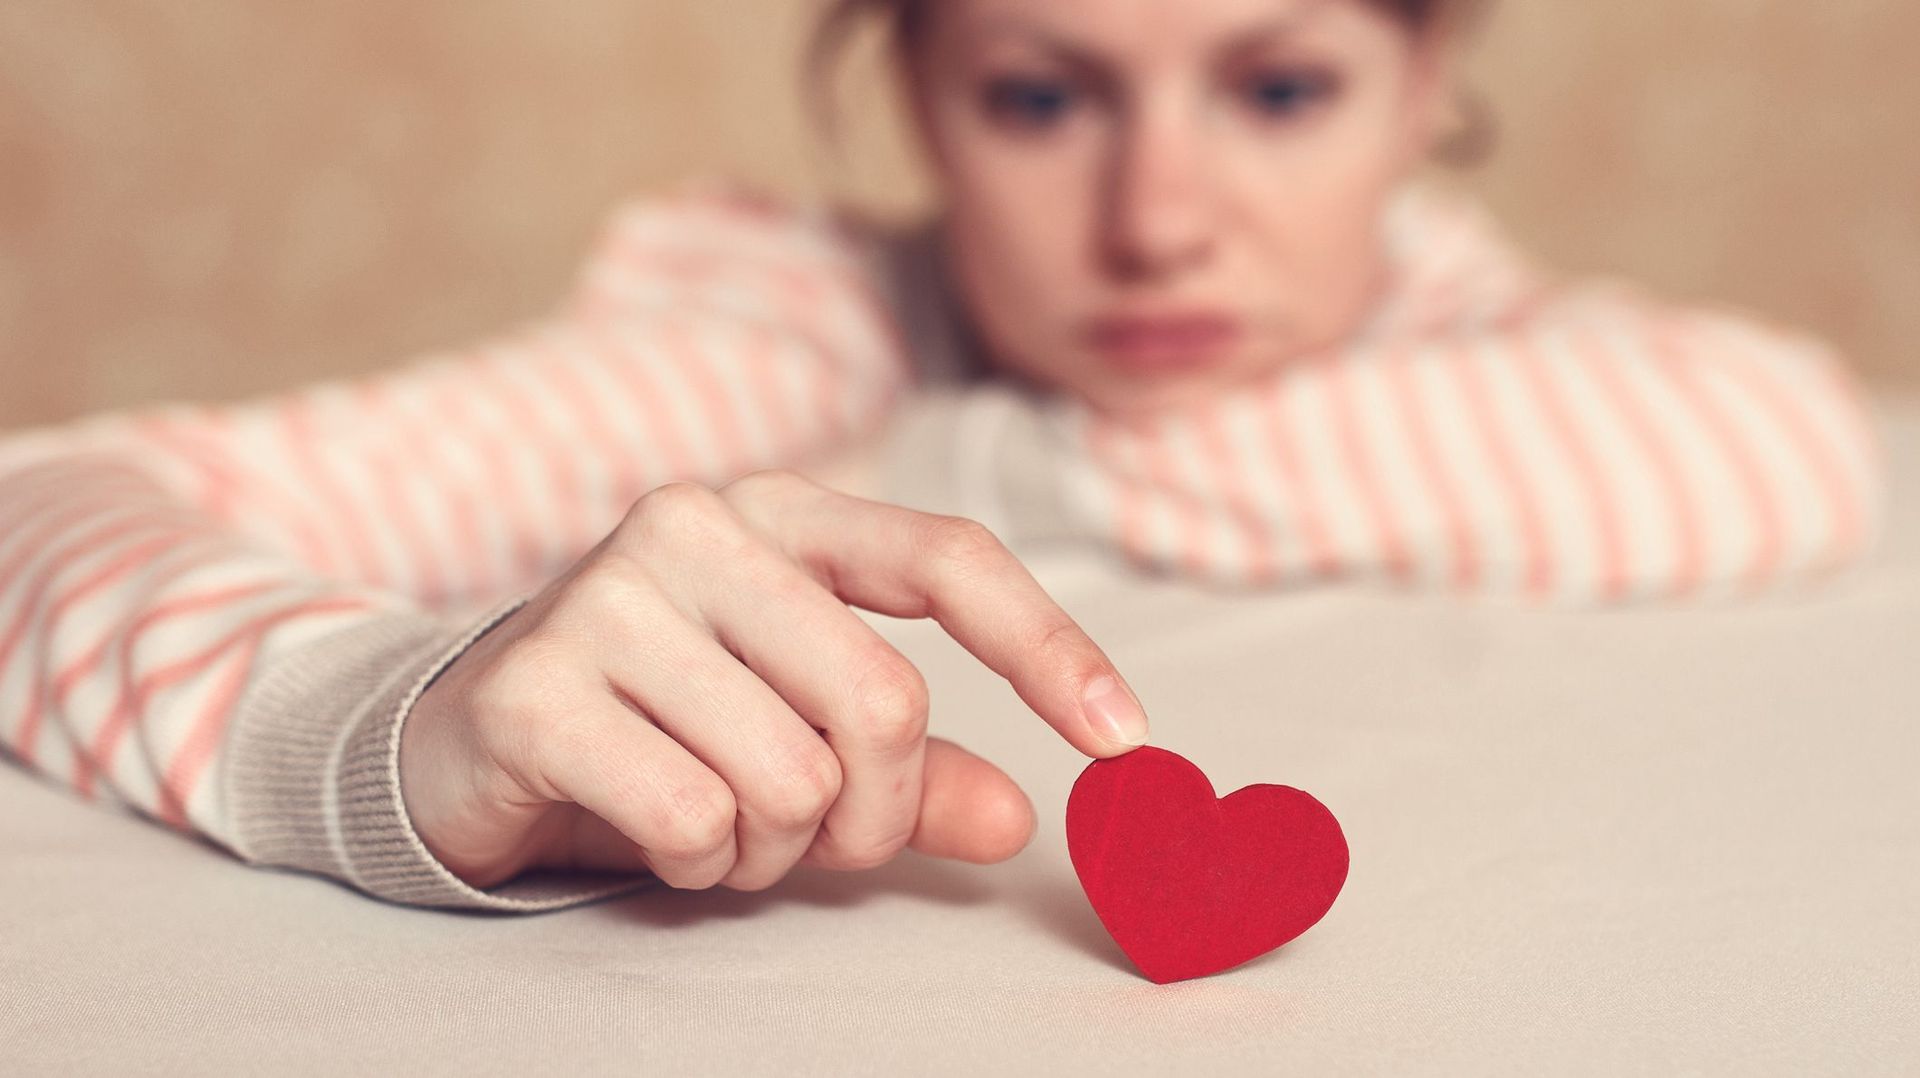 Comment aider votre enfant à surmonter son chagrin d'amour ?